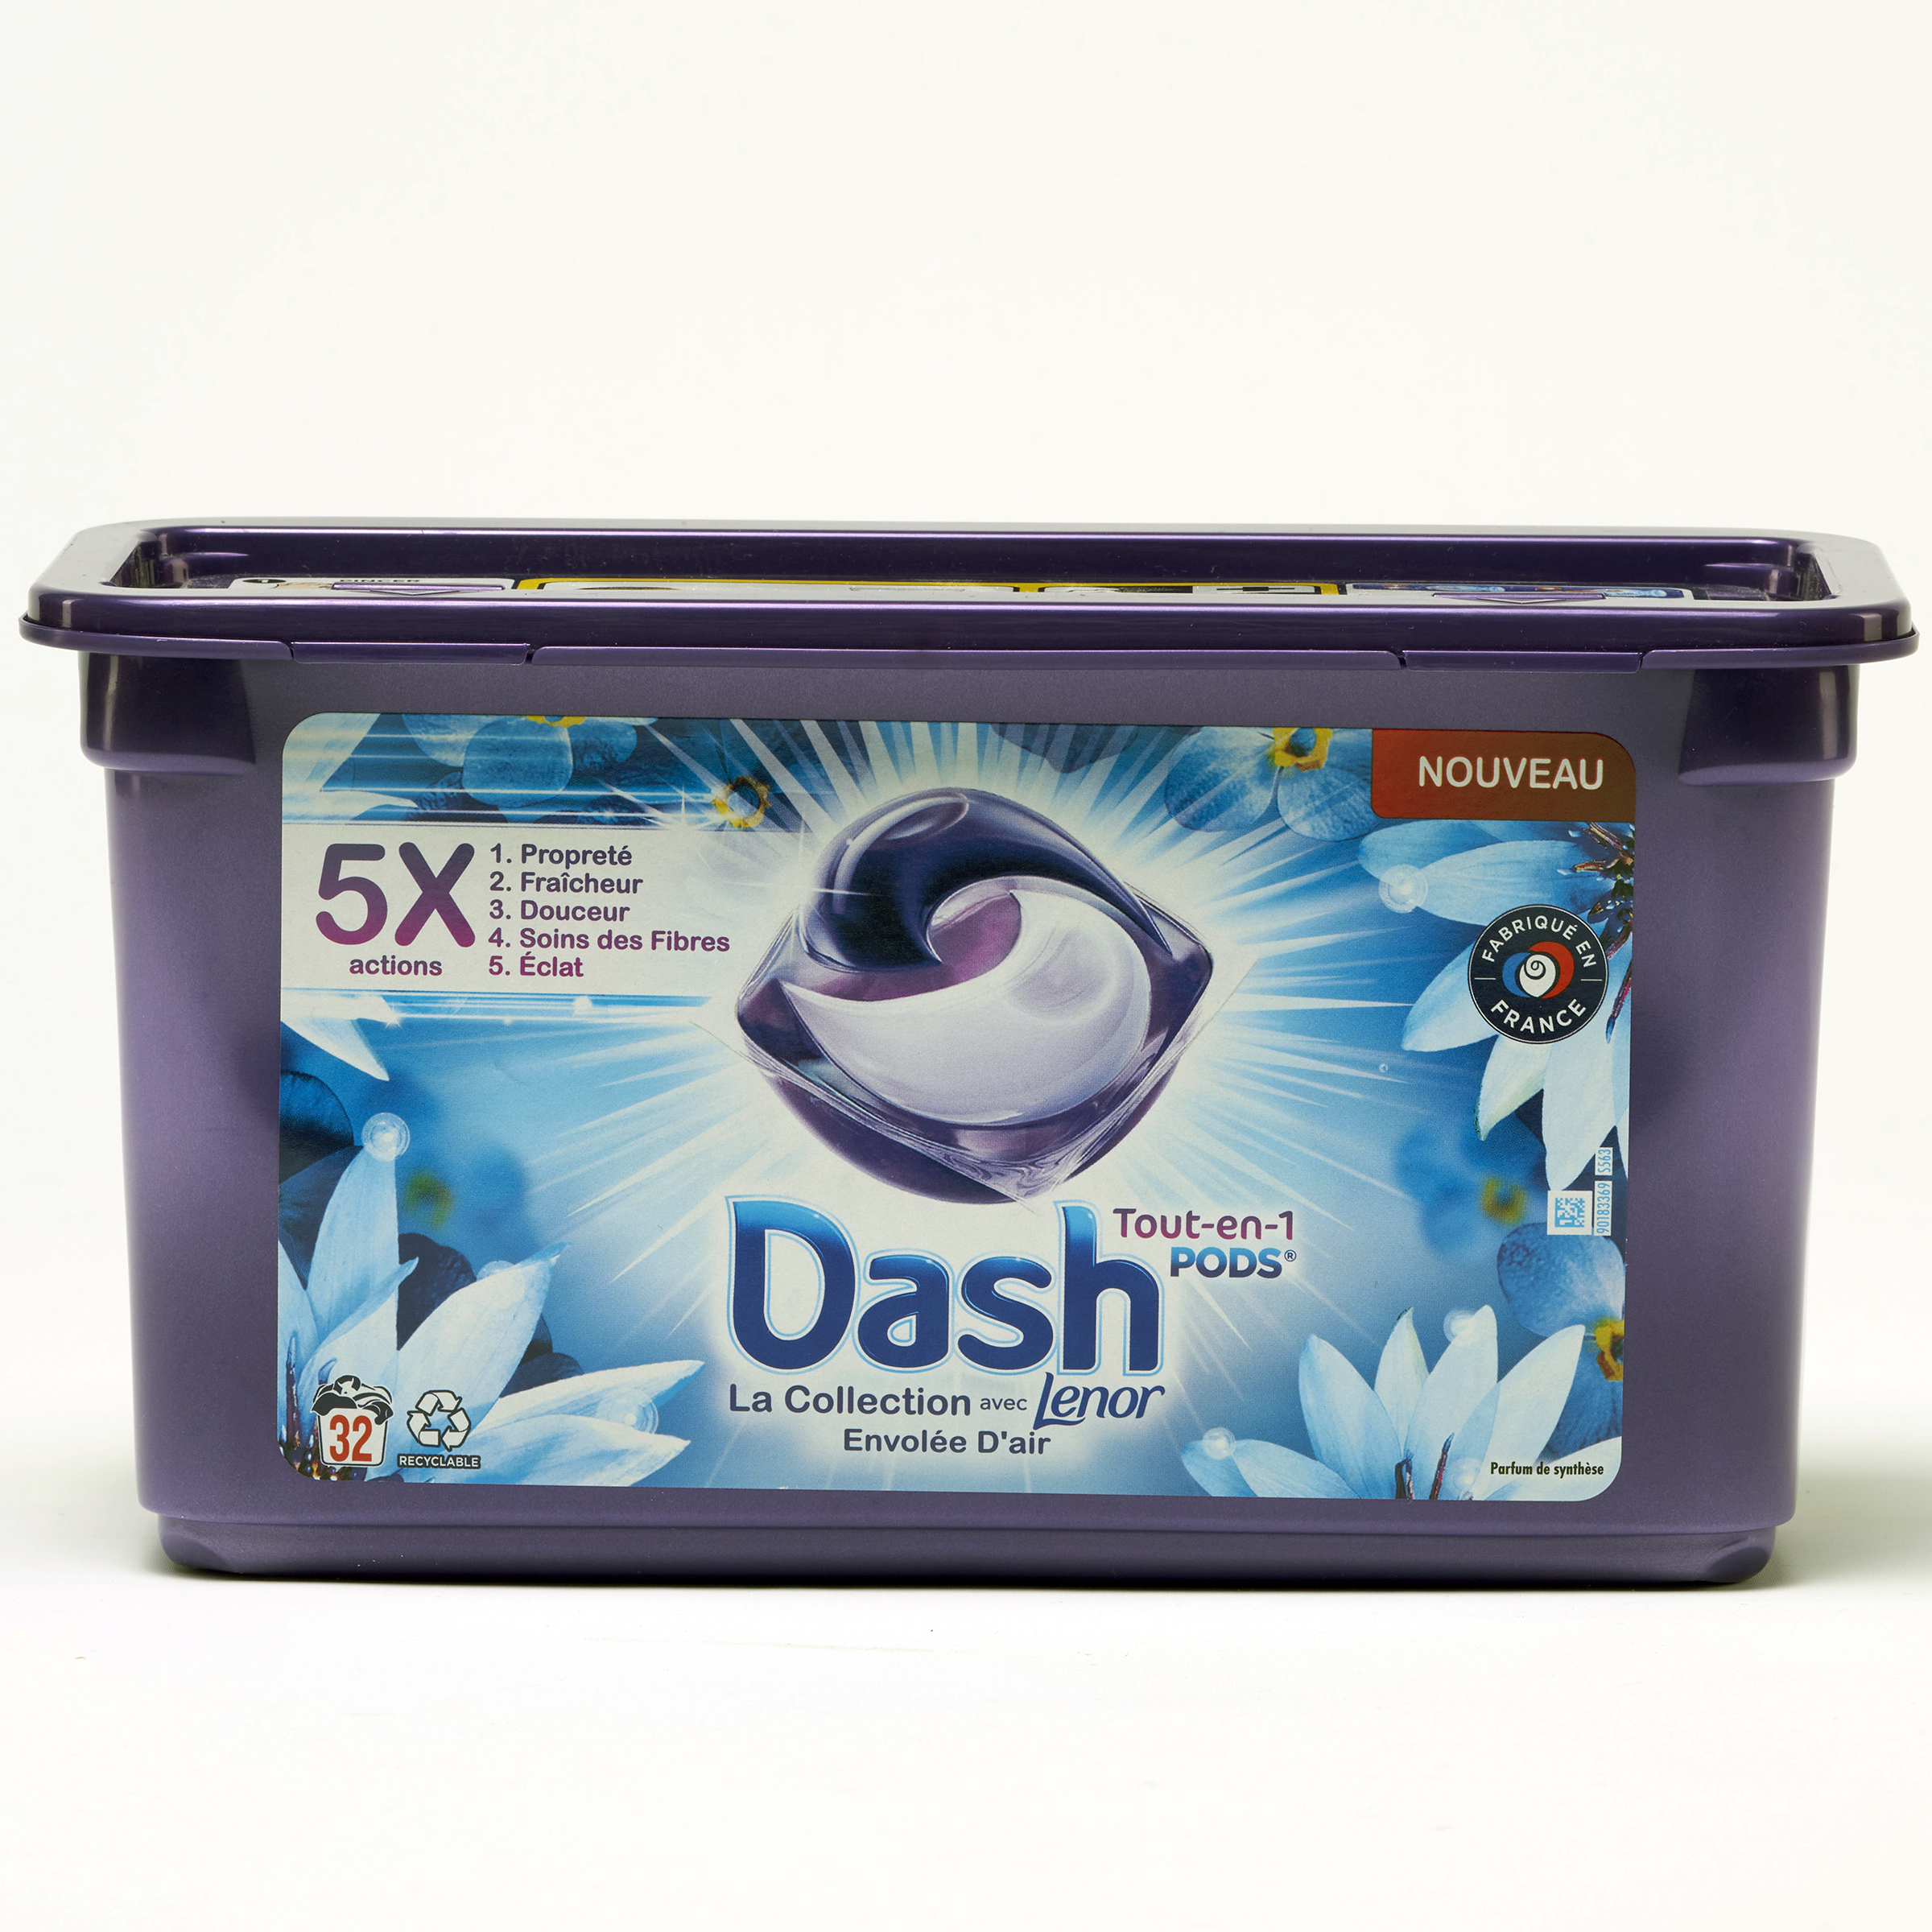 Dash Tout-en-1 pods - La collection Lenor Envolée d’air - 